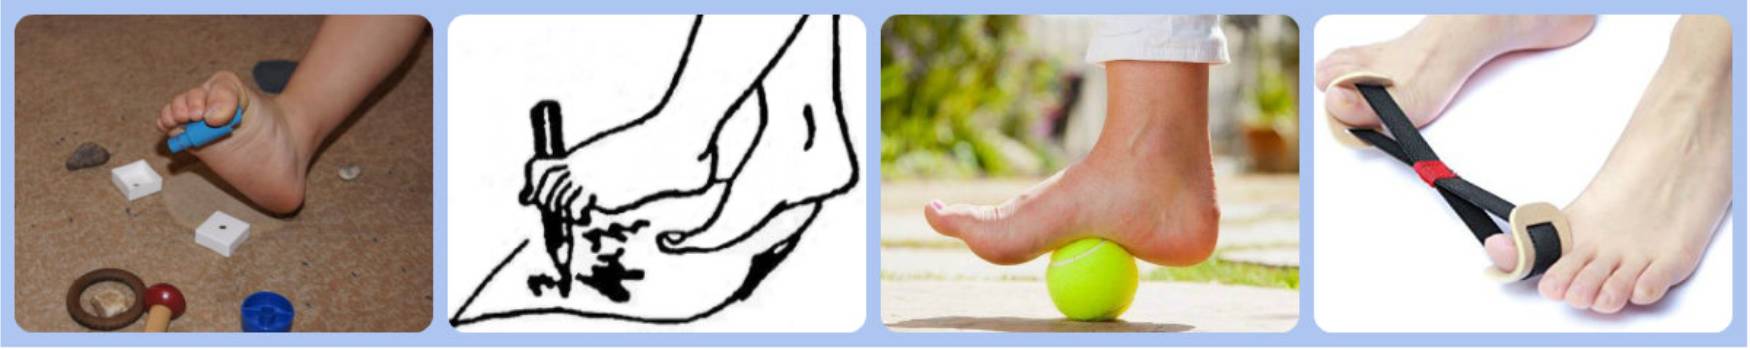 Упражнения при вальгусной деформации большого пальца стопы